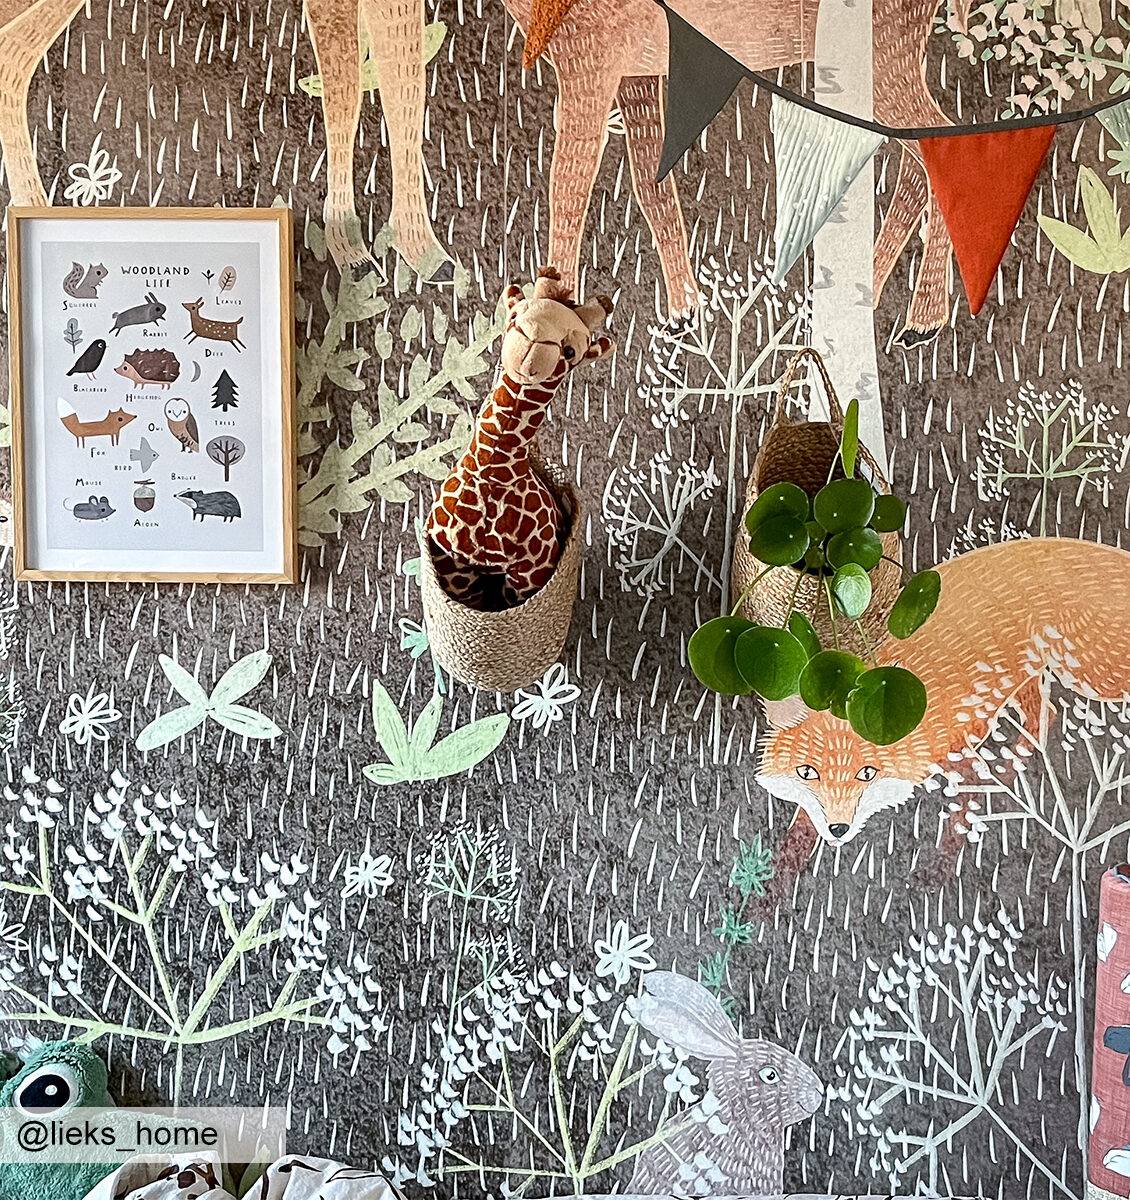 NL kinderkamer met poster van jungle dieren, giraffe knuffel en plantje aan de muur